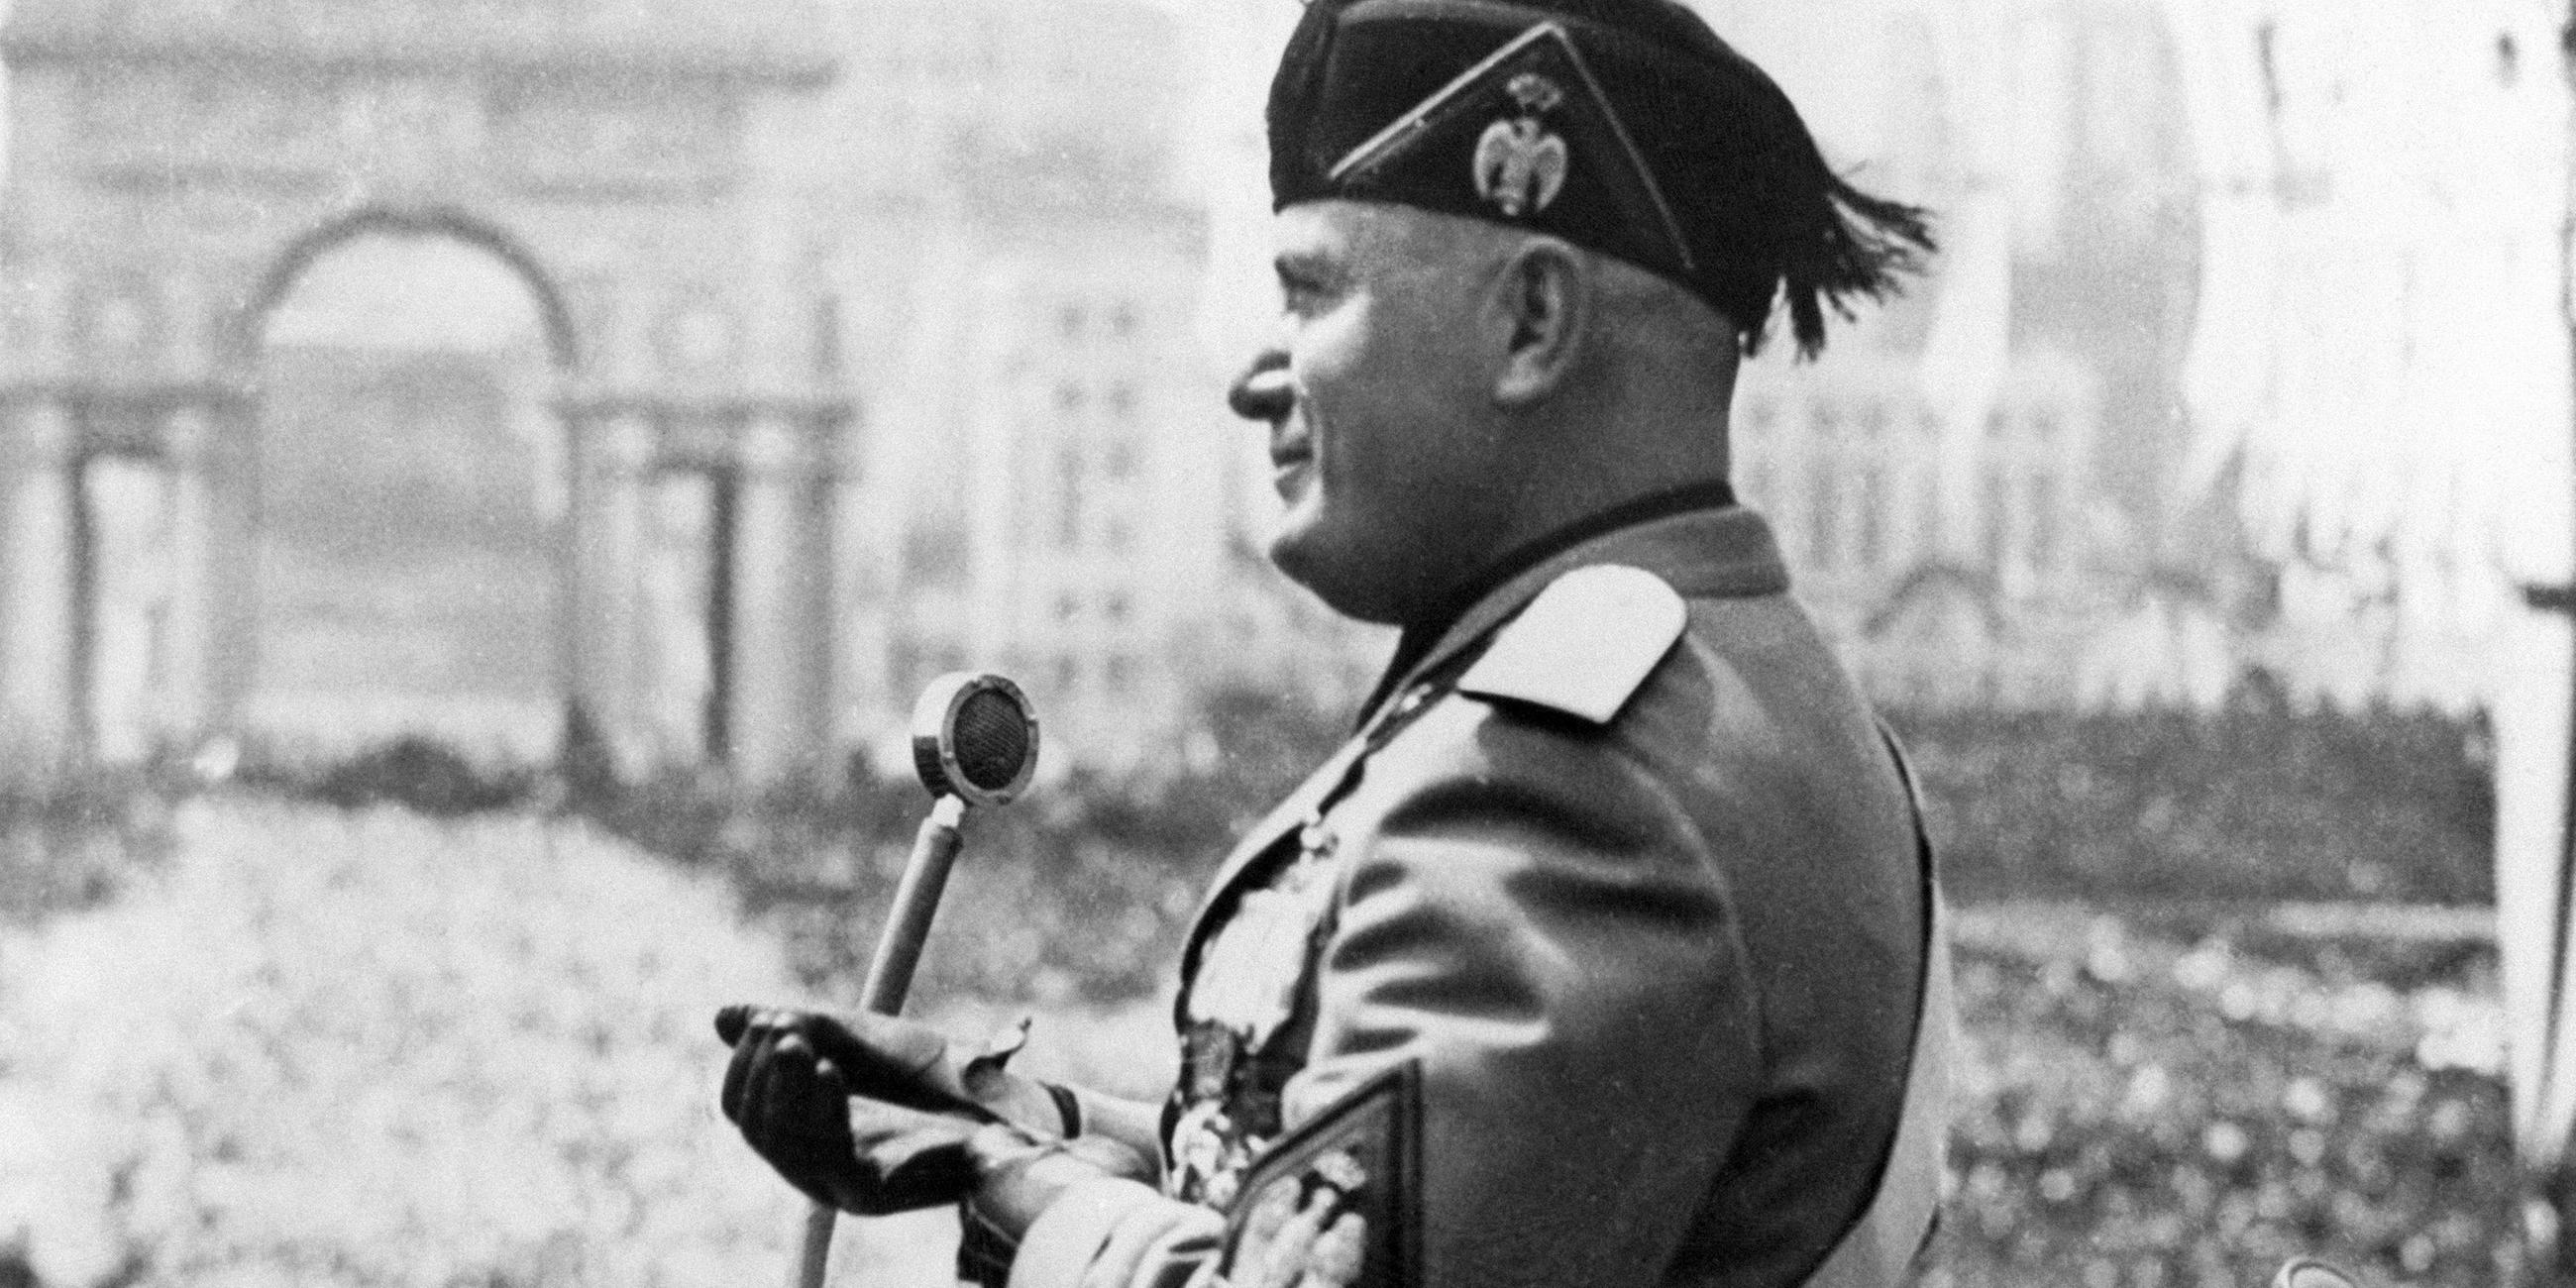 "Bauplan des Bösen: Benito Mussolini": Benito Mussolini hält eine Rede vor einem großen Publikum.